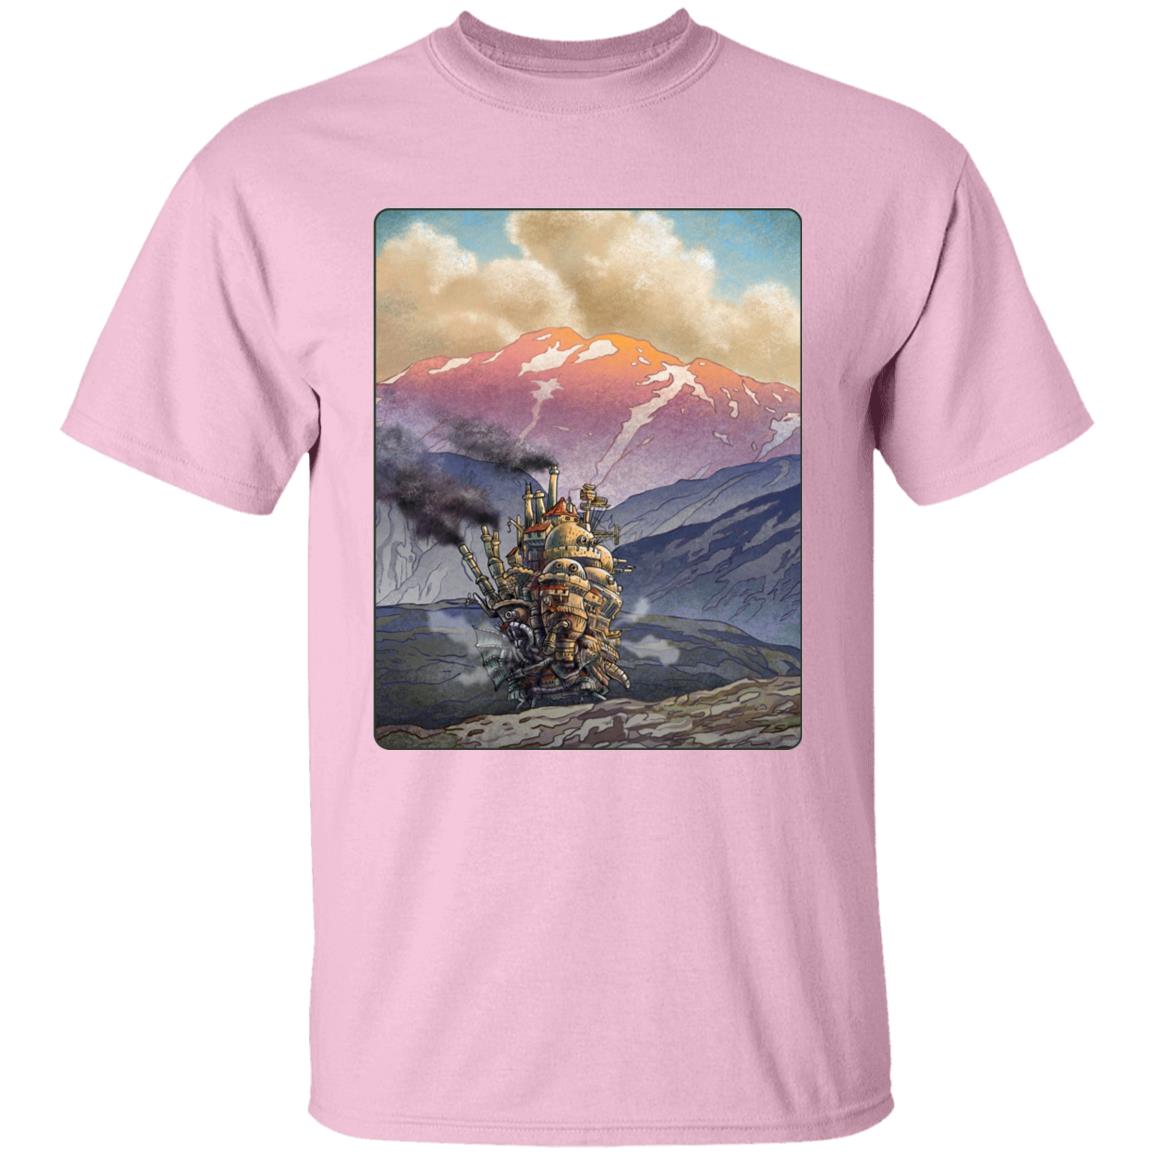 Howl’s Moving Castle Landscape T Shirt